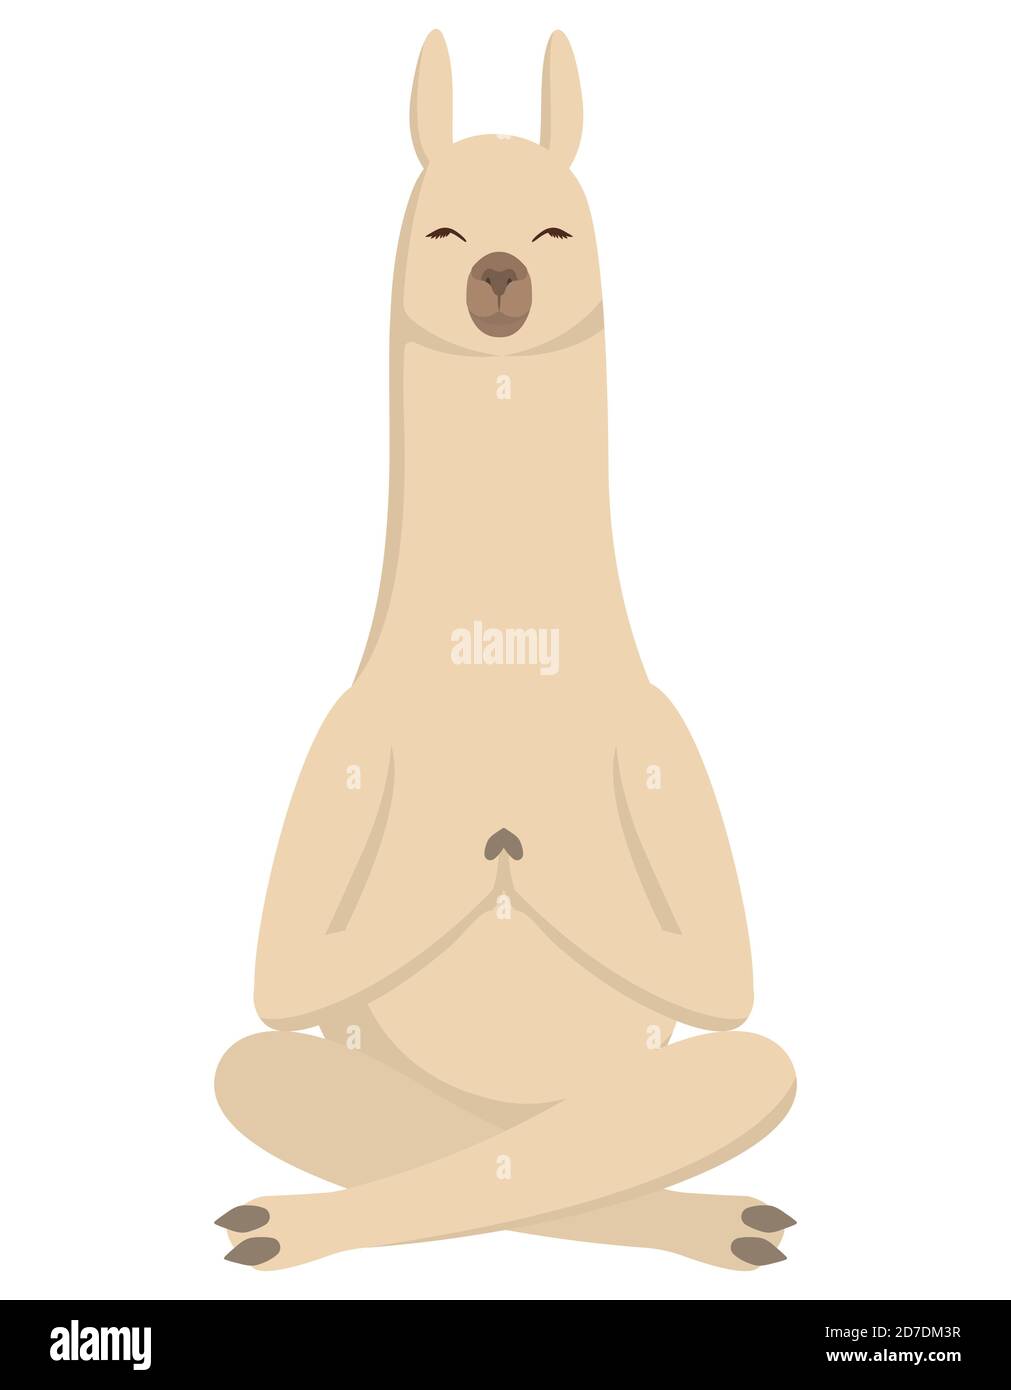 Llama haciendo yoga. Lindo animal en estilo de dibujos animados. Ilustración del Vector